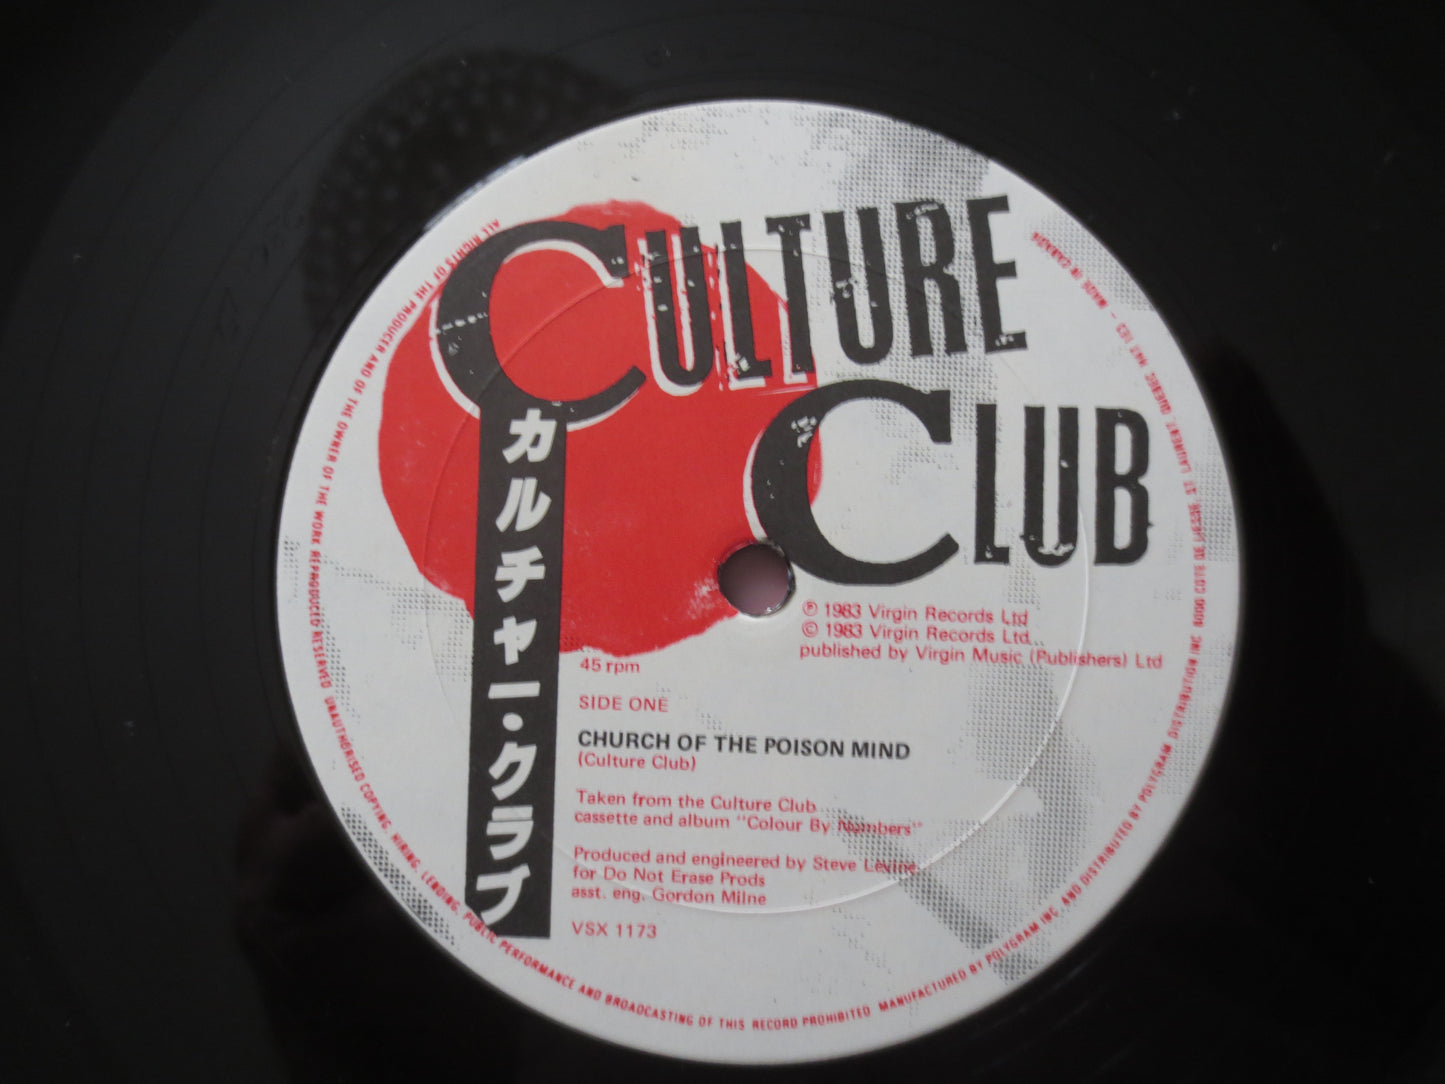 CULTURE CLUB, I'll TUMBLE You, Vintage Vinyl, Record Vinyl, Records, Vinyl Records, Boy George Records, Pop Lp, 1983 Record